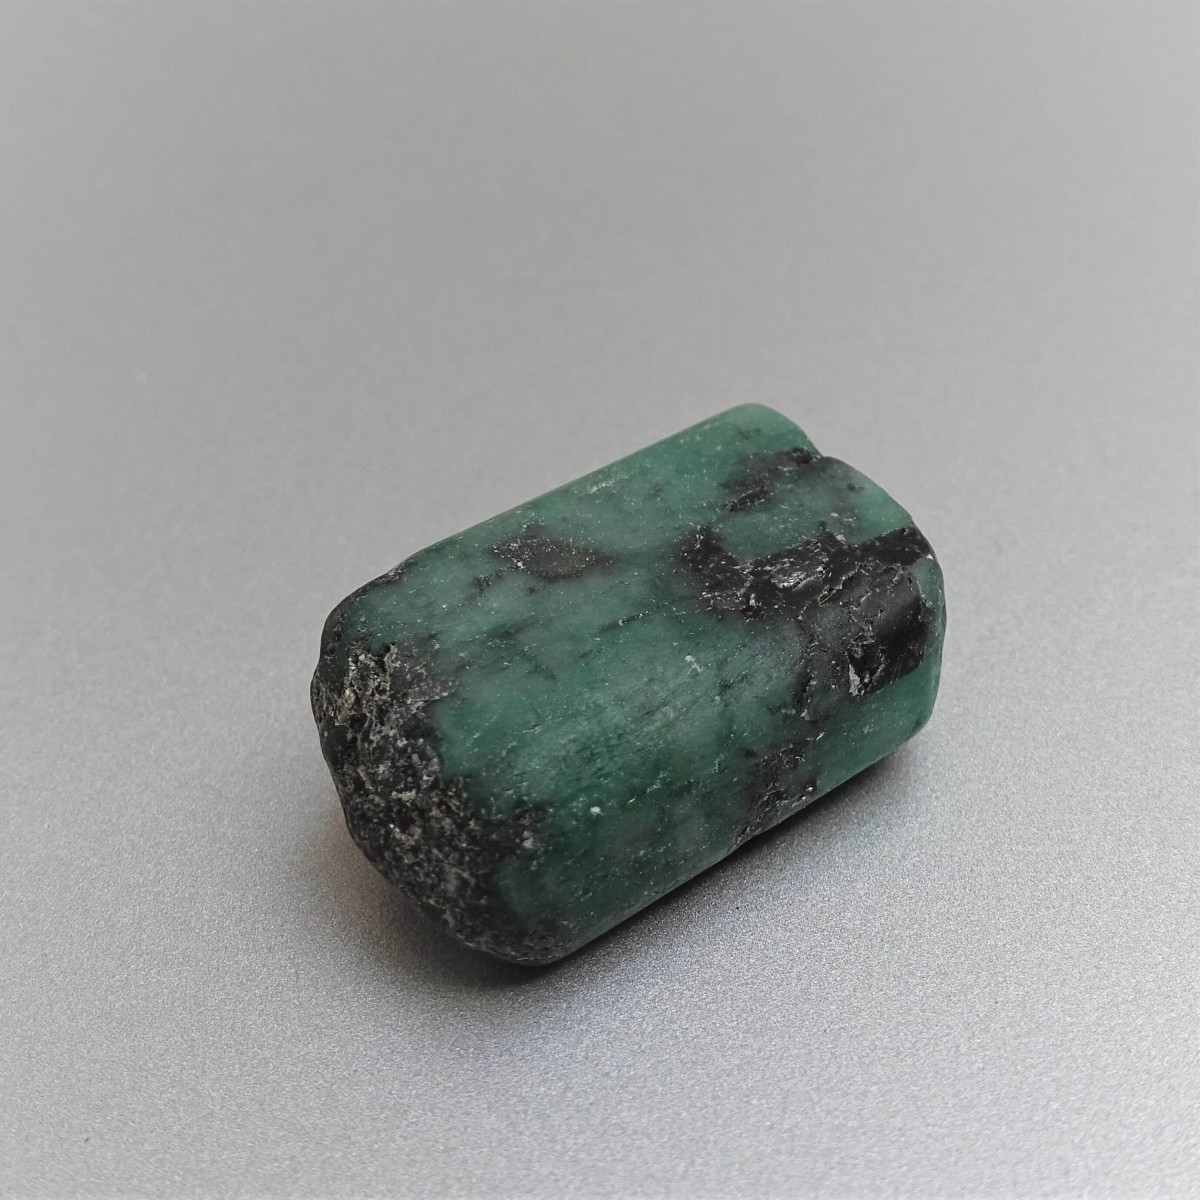 Emerald natural crystal 11,3g, Zambia